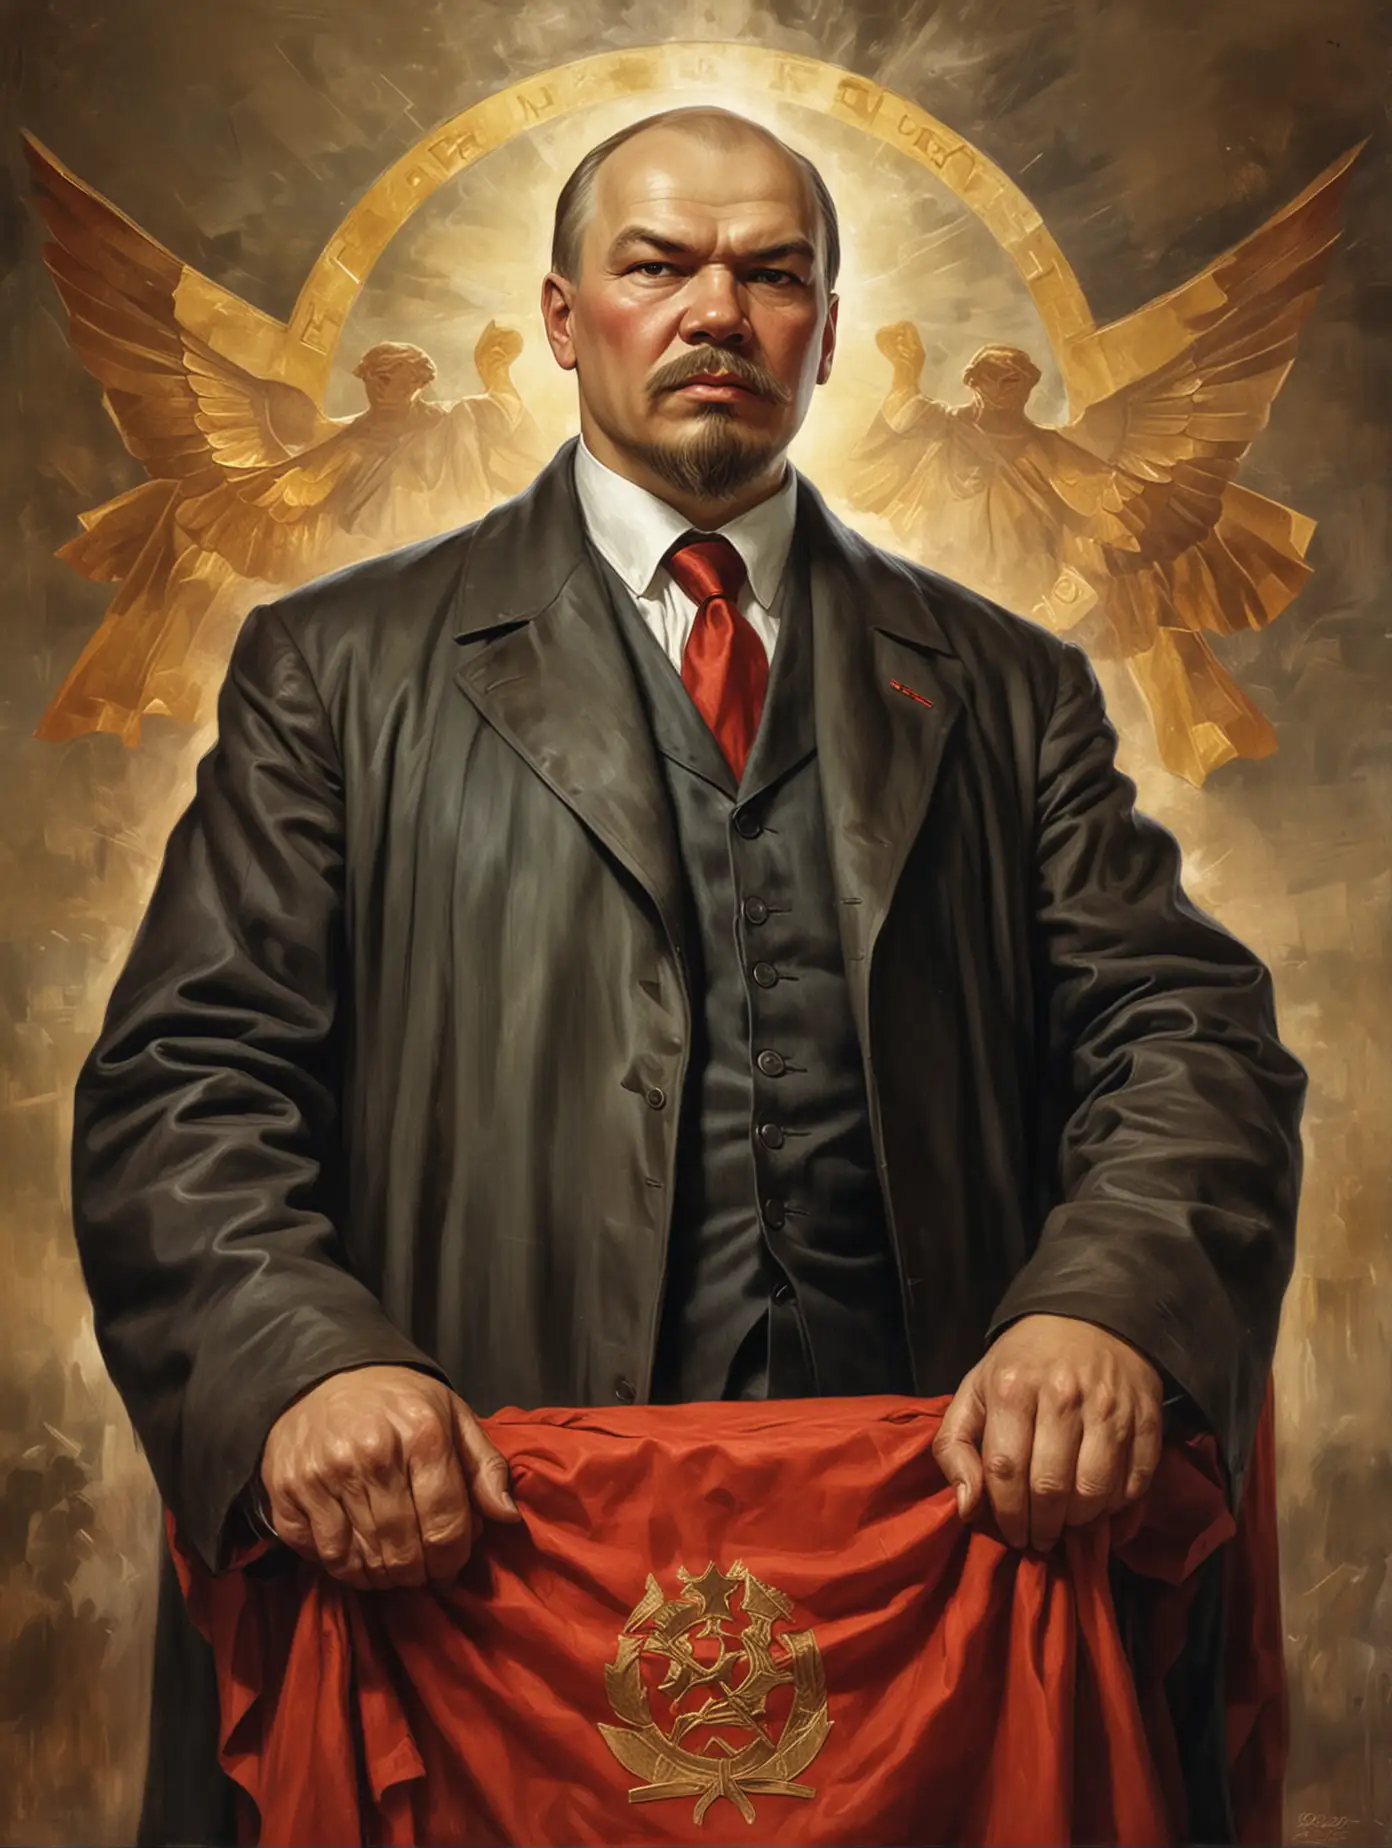 Lenin-the-God-of-Communism-Revered-Leader-of-the-Proletariat